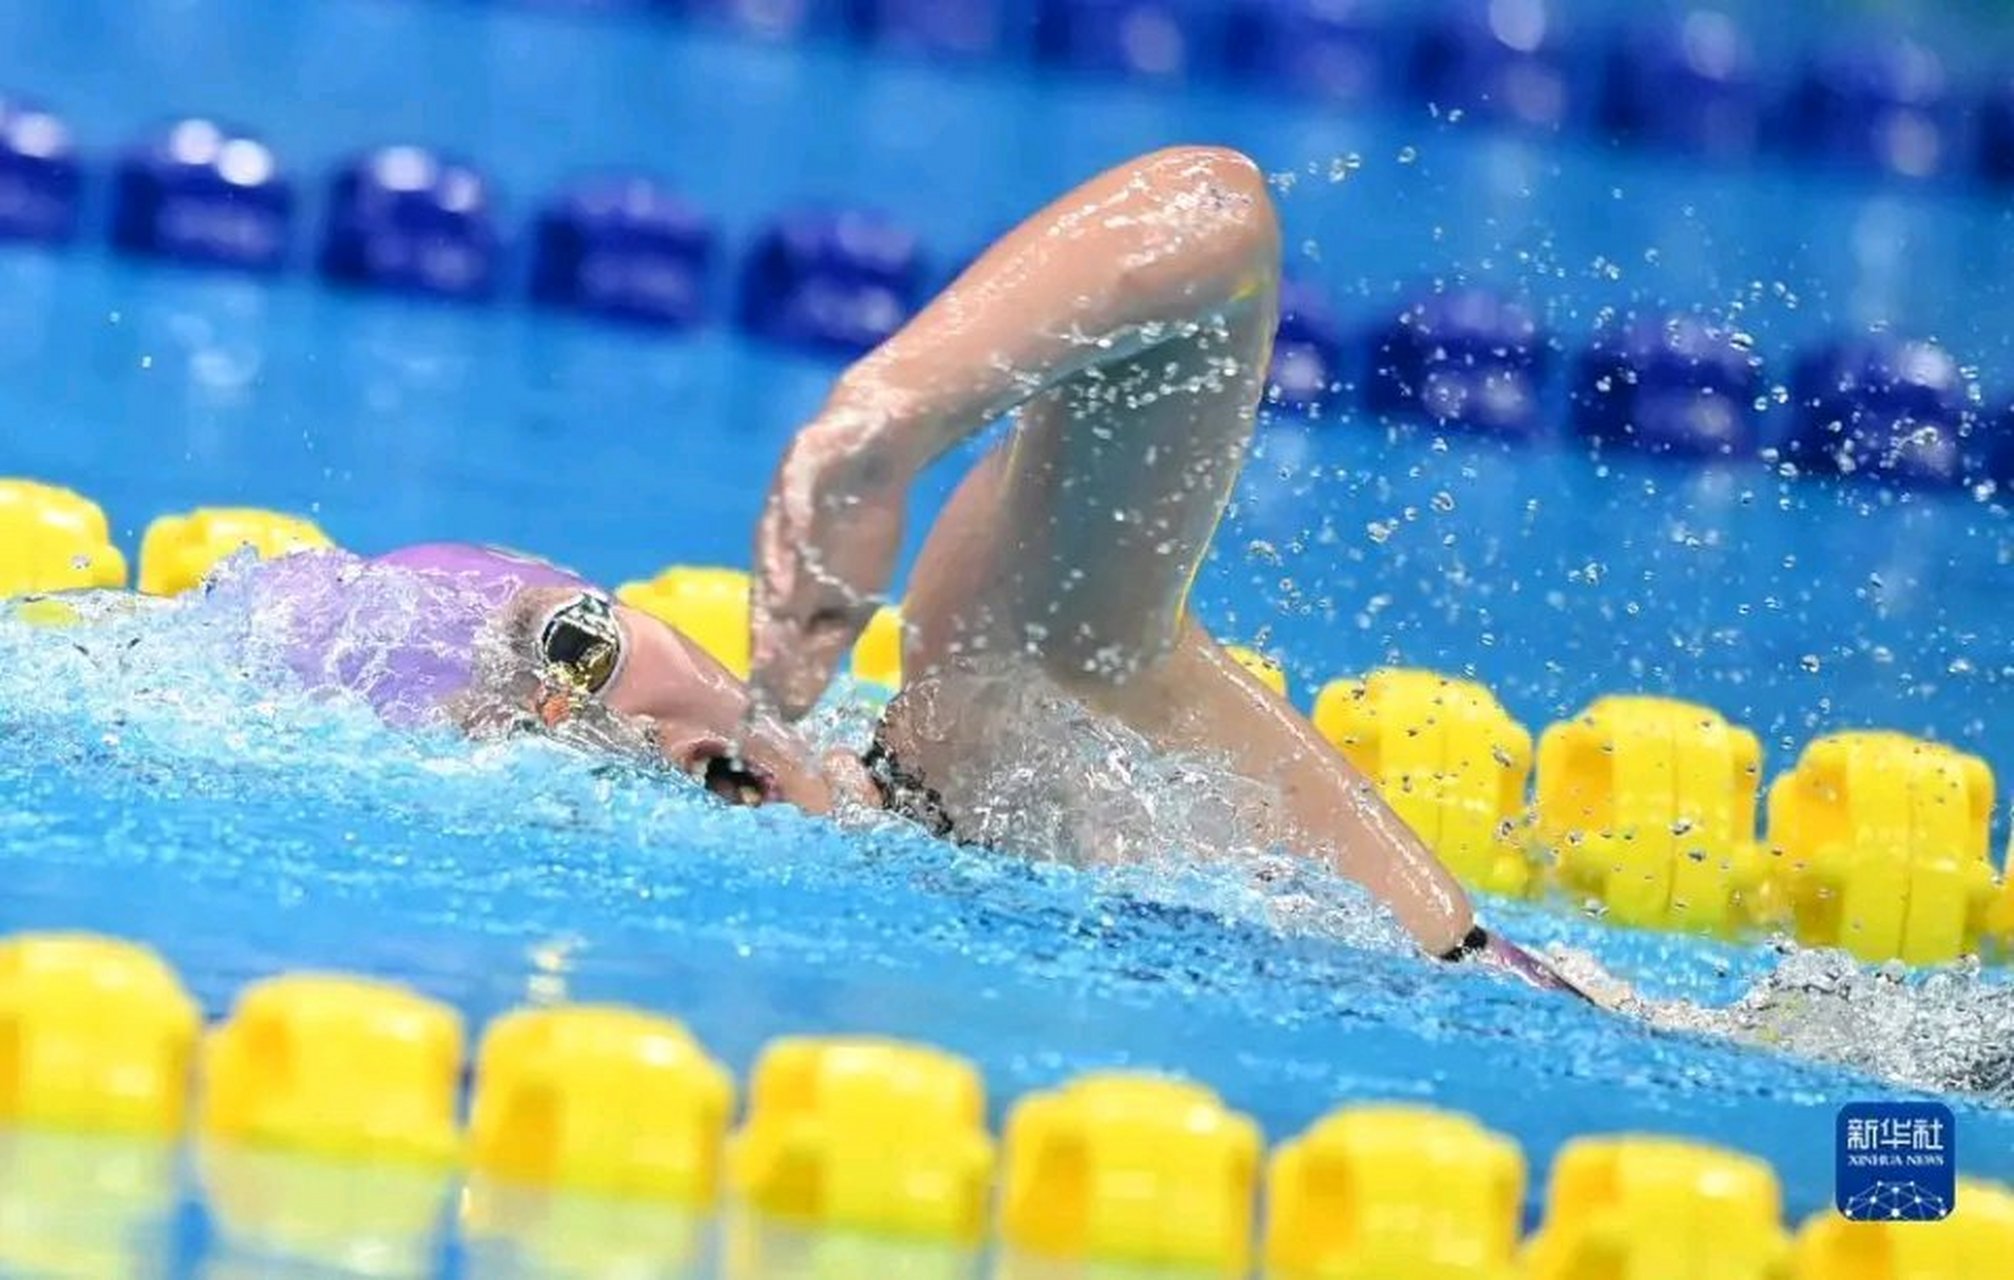 9月26日晚,杭州亚运会女子400米自由泳决赛展开角逐,中国选手李冰洁以